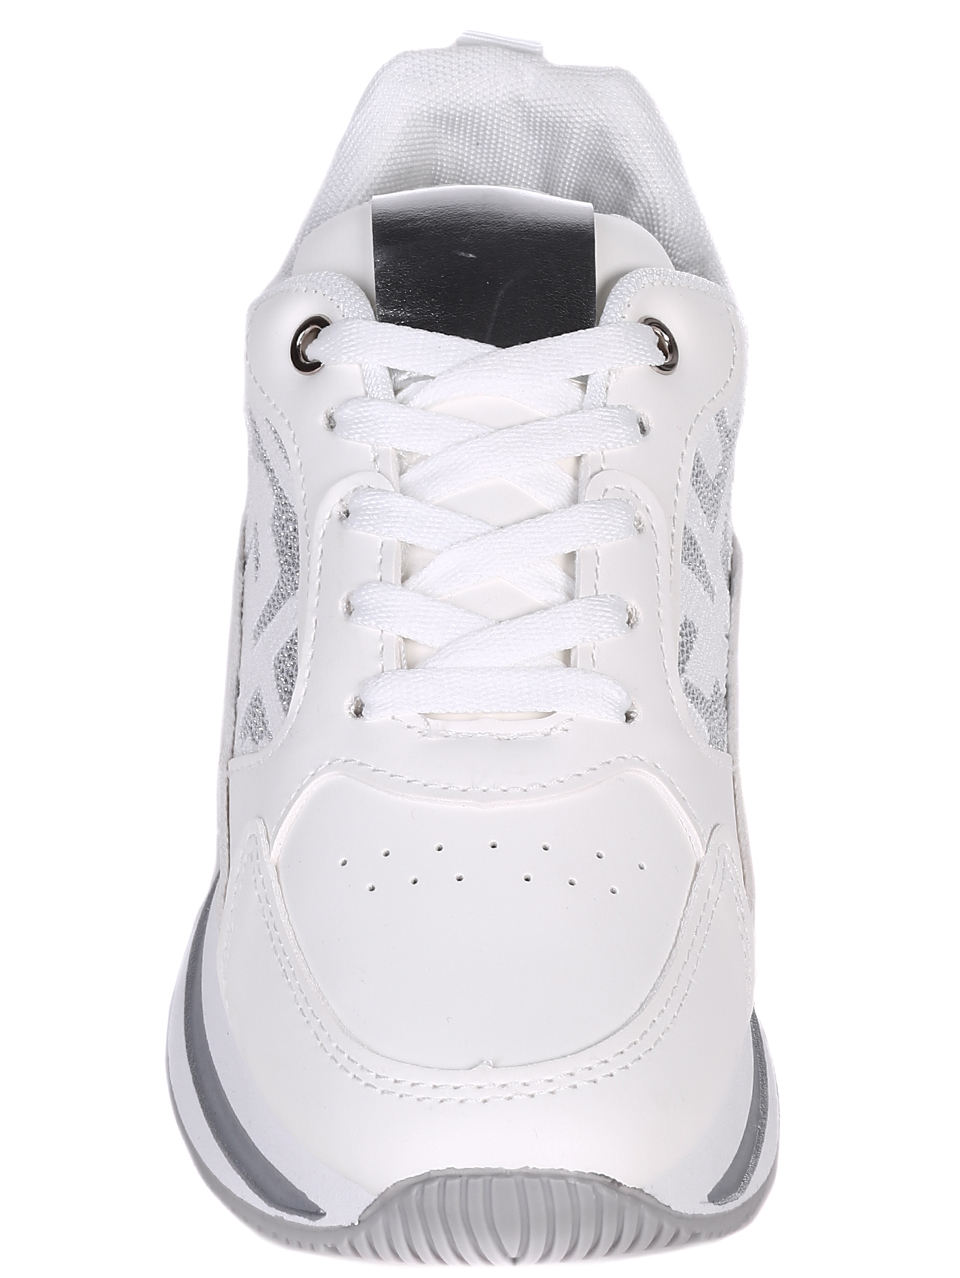 Ежедневни дамски обувки на платформа в бяло 3U-22038 white/silver